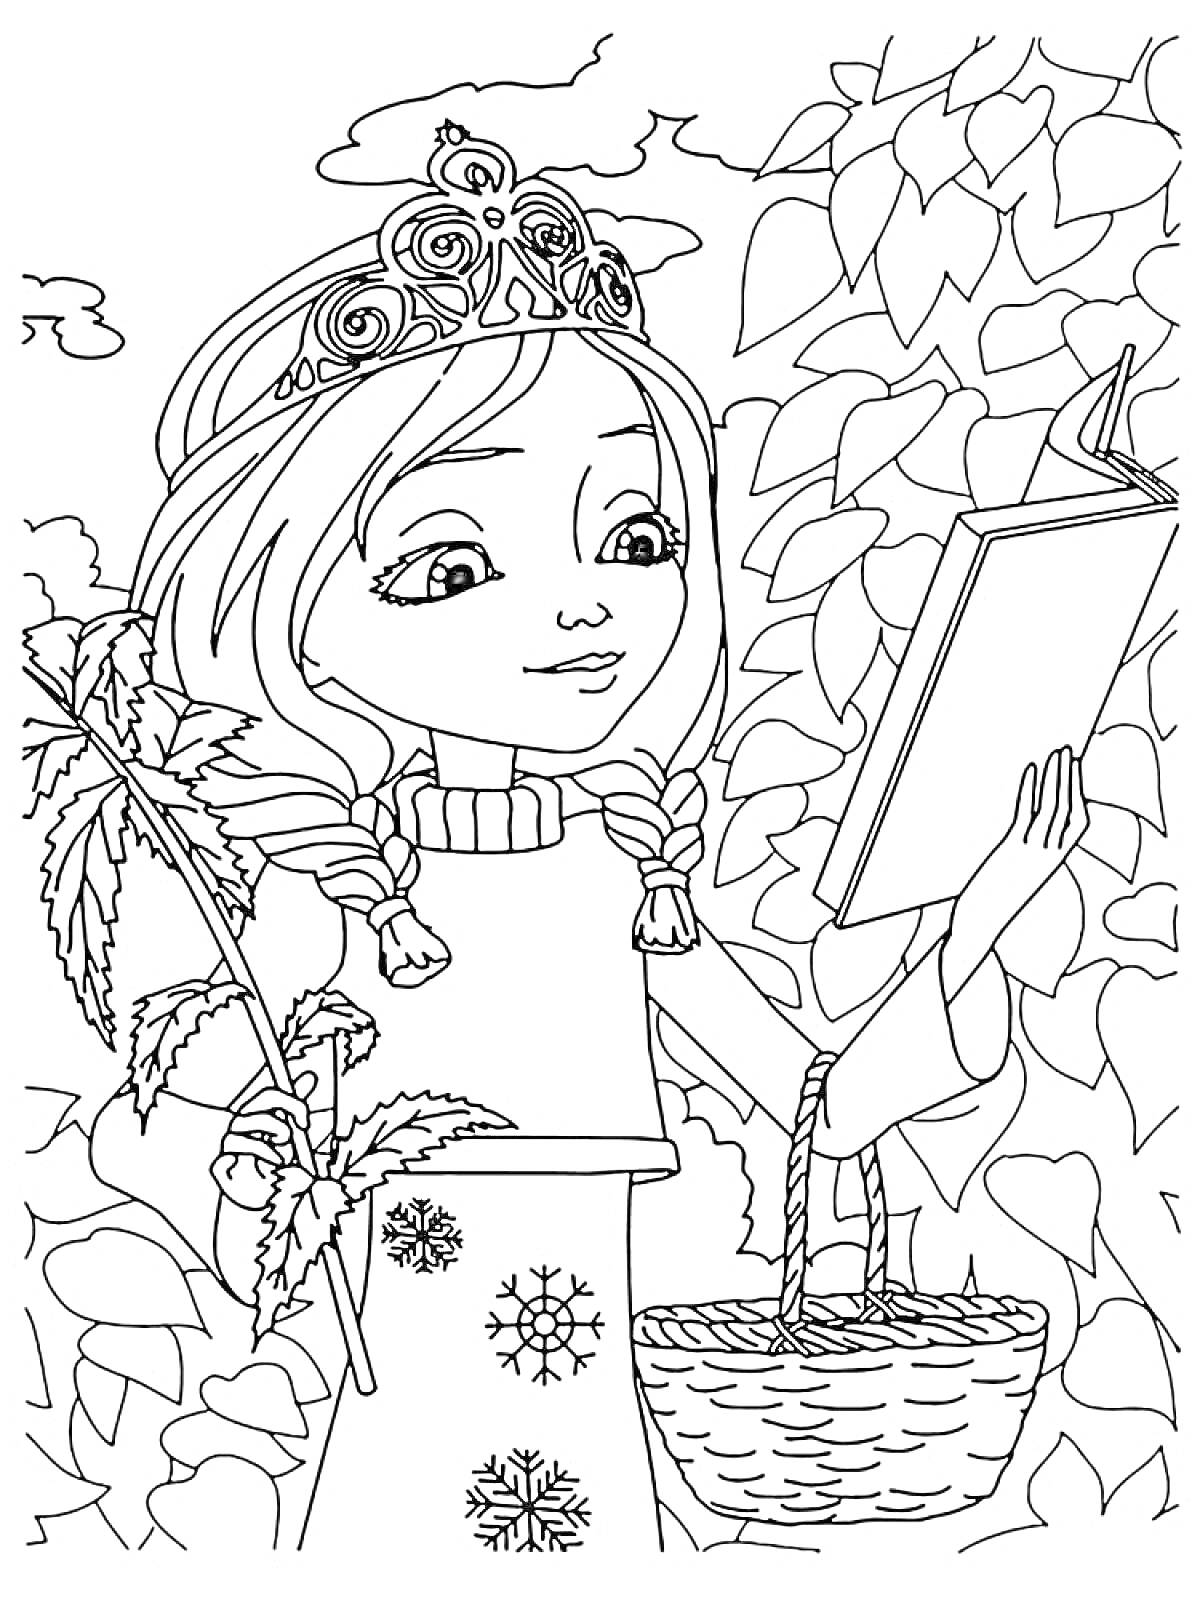 Девочка с растением и книгой, украшенная корона, корзинка и листья на заднем плане